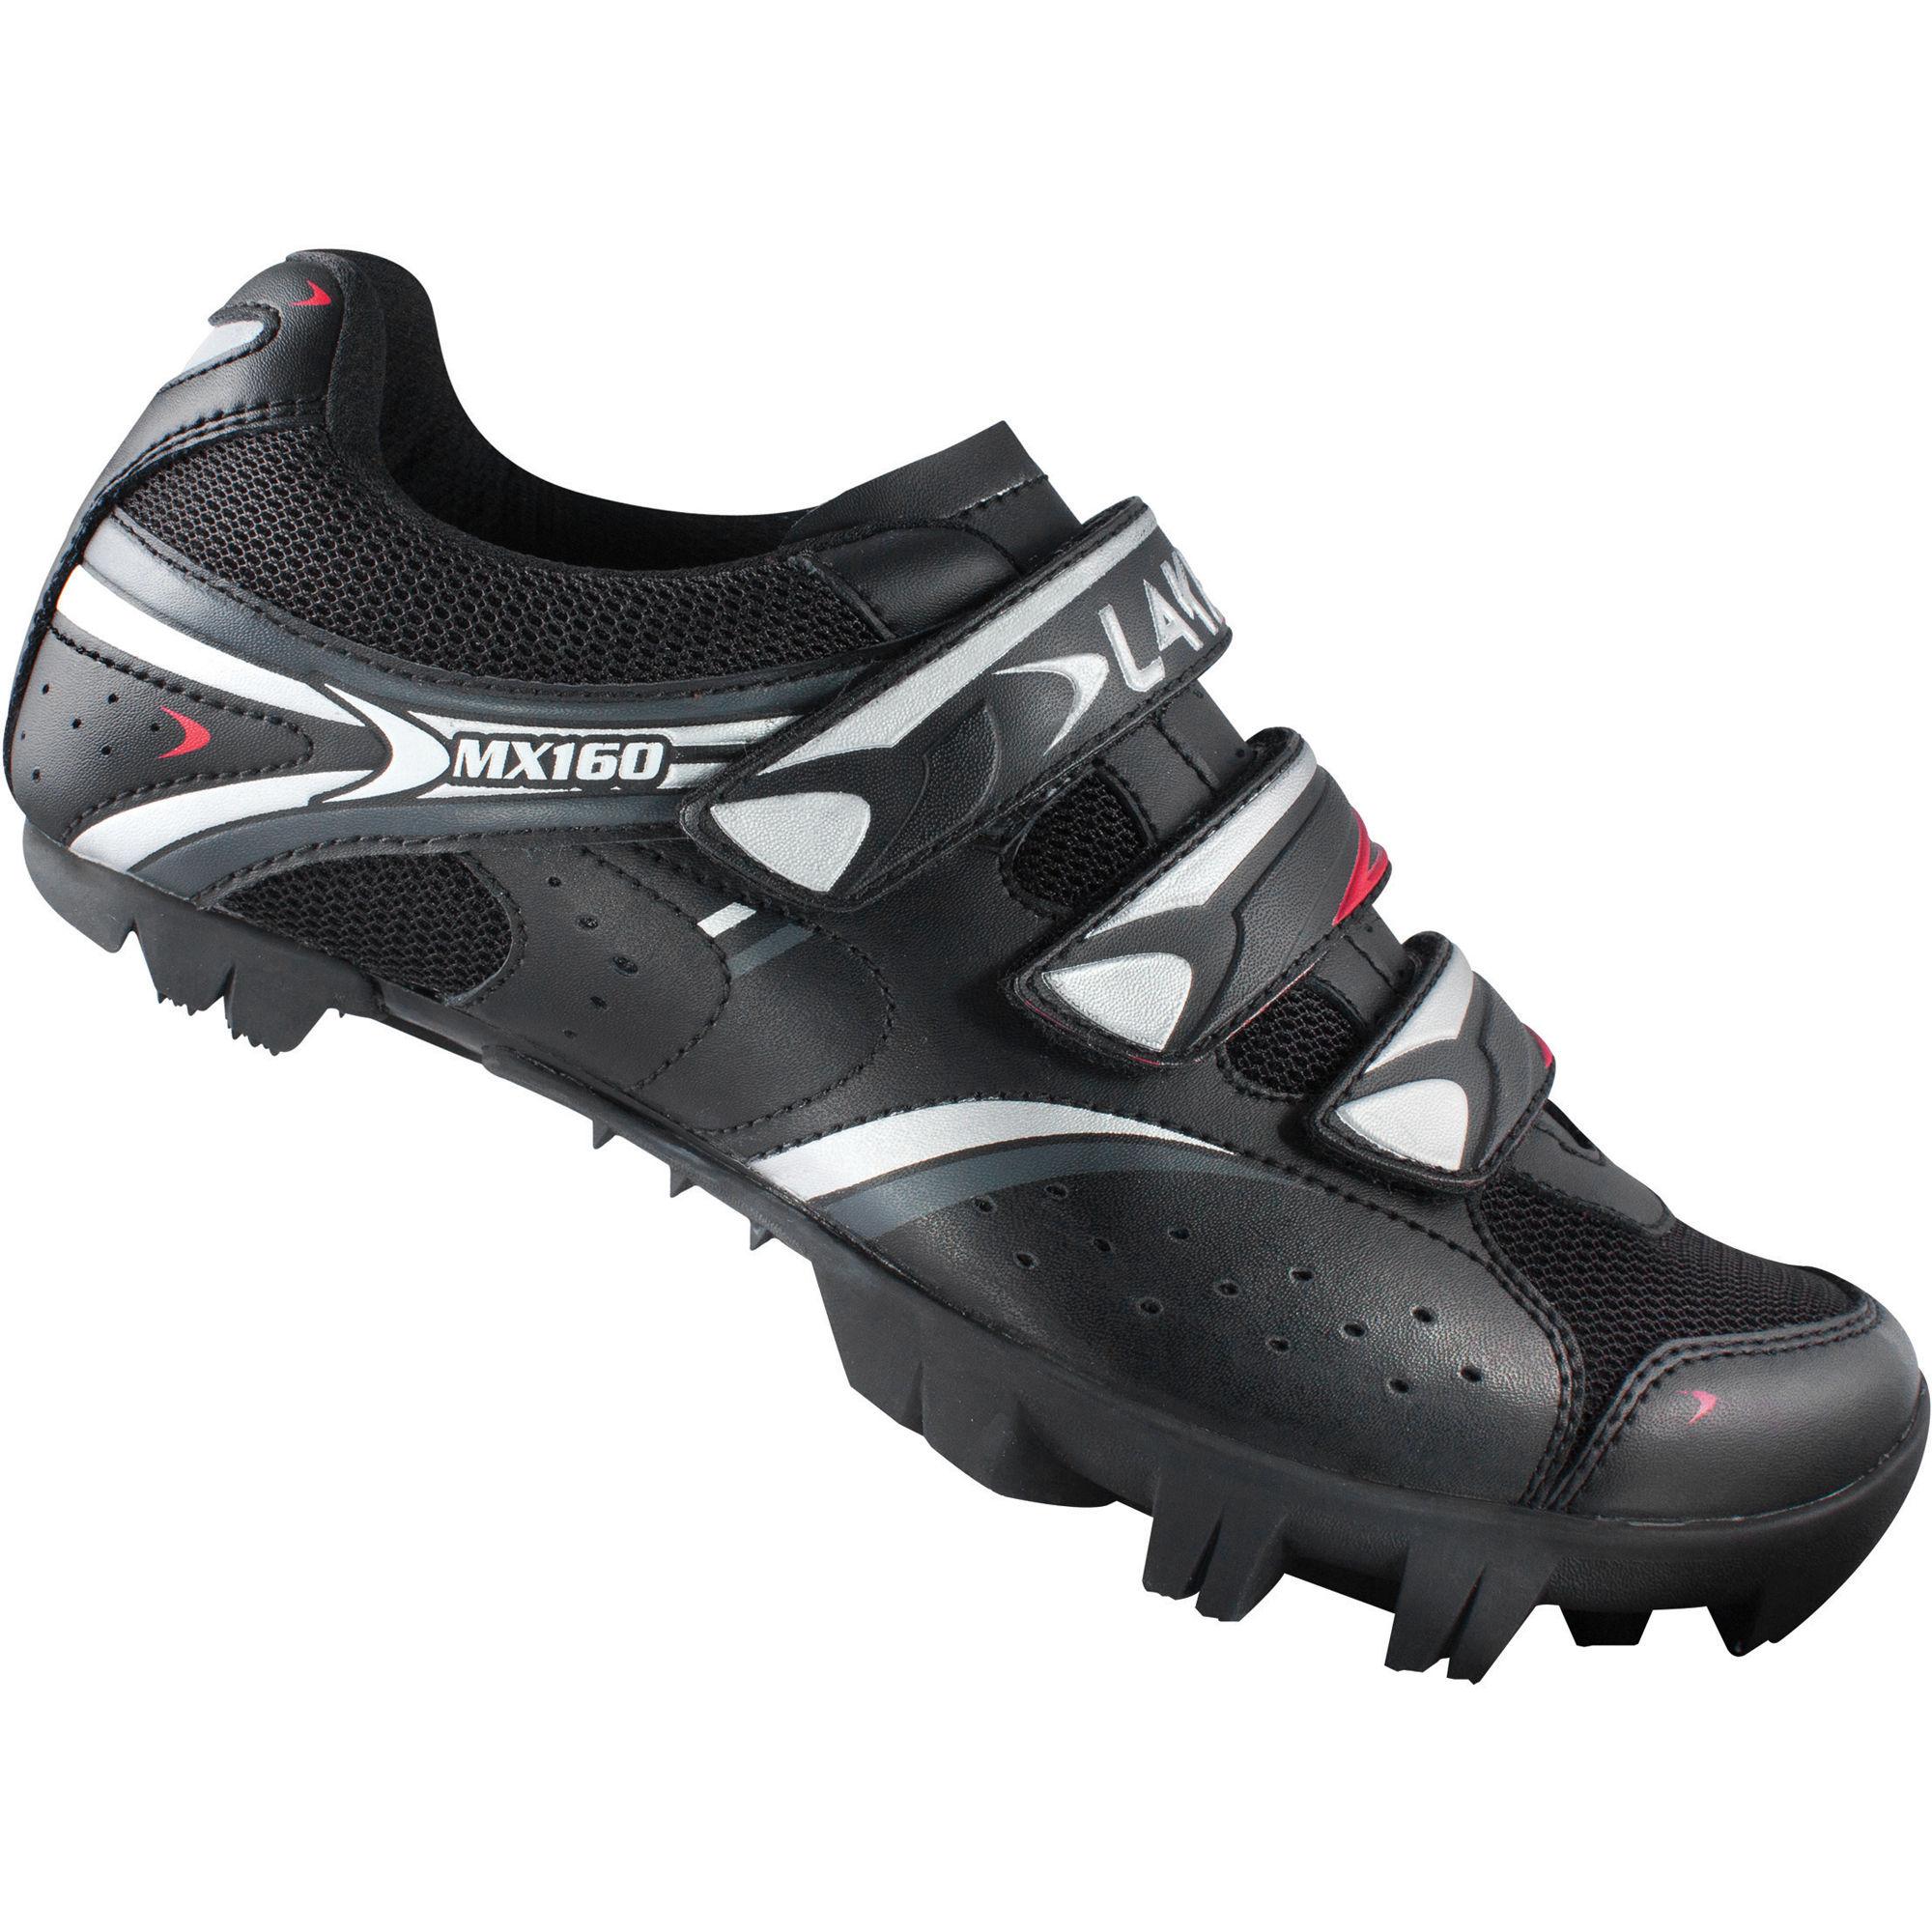 Foto Zapatillas de MTB Lake - MX160 - 50 Black | Calzado de trail